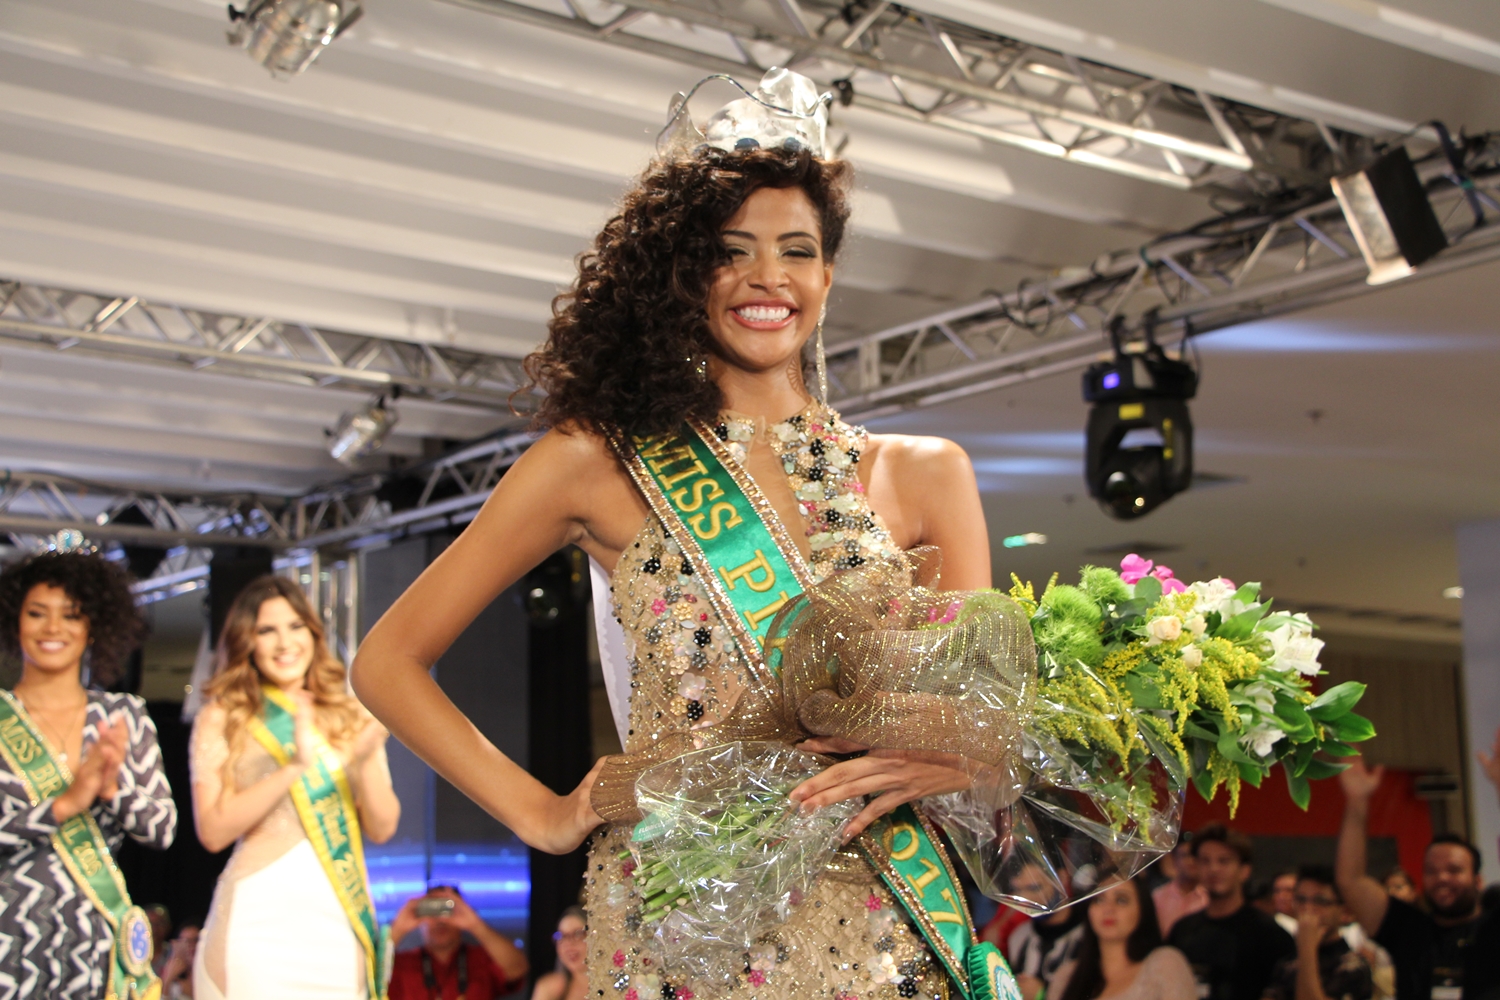 Miss Piauí 2017